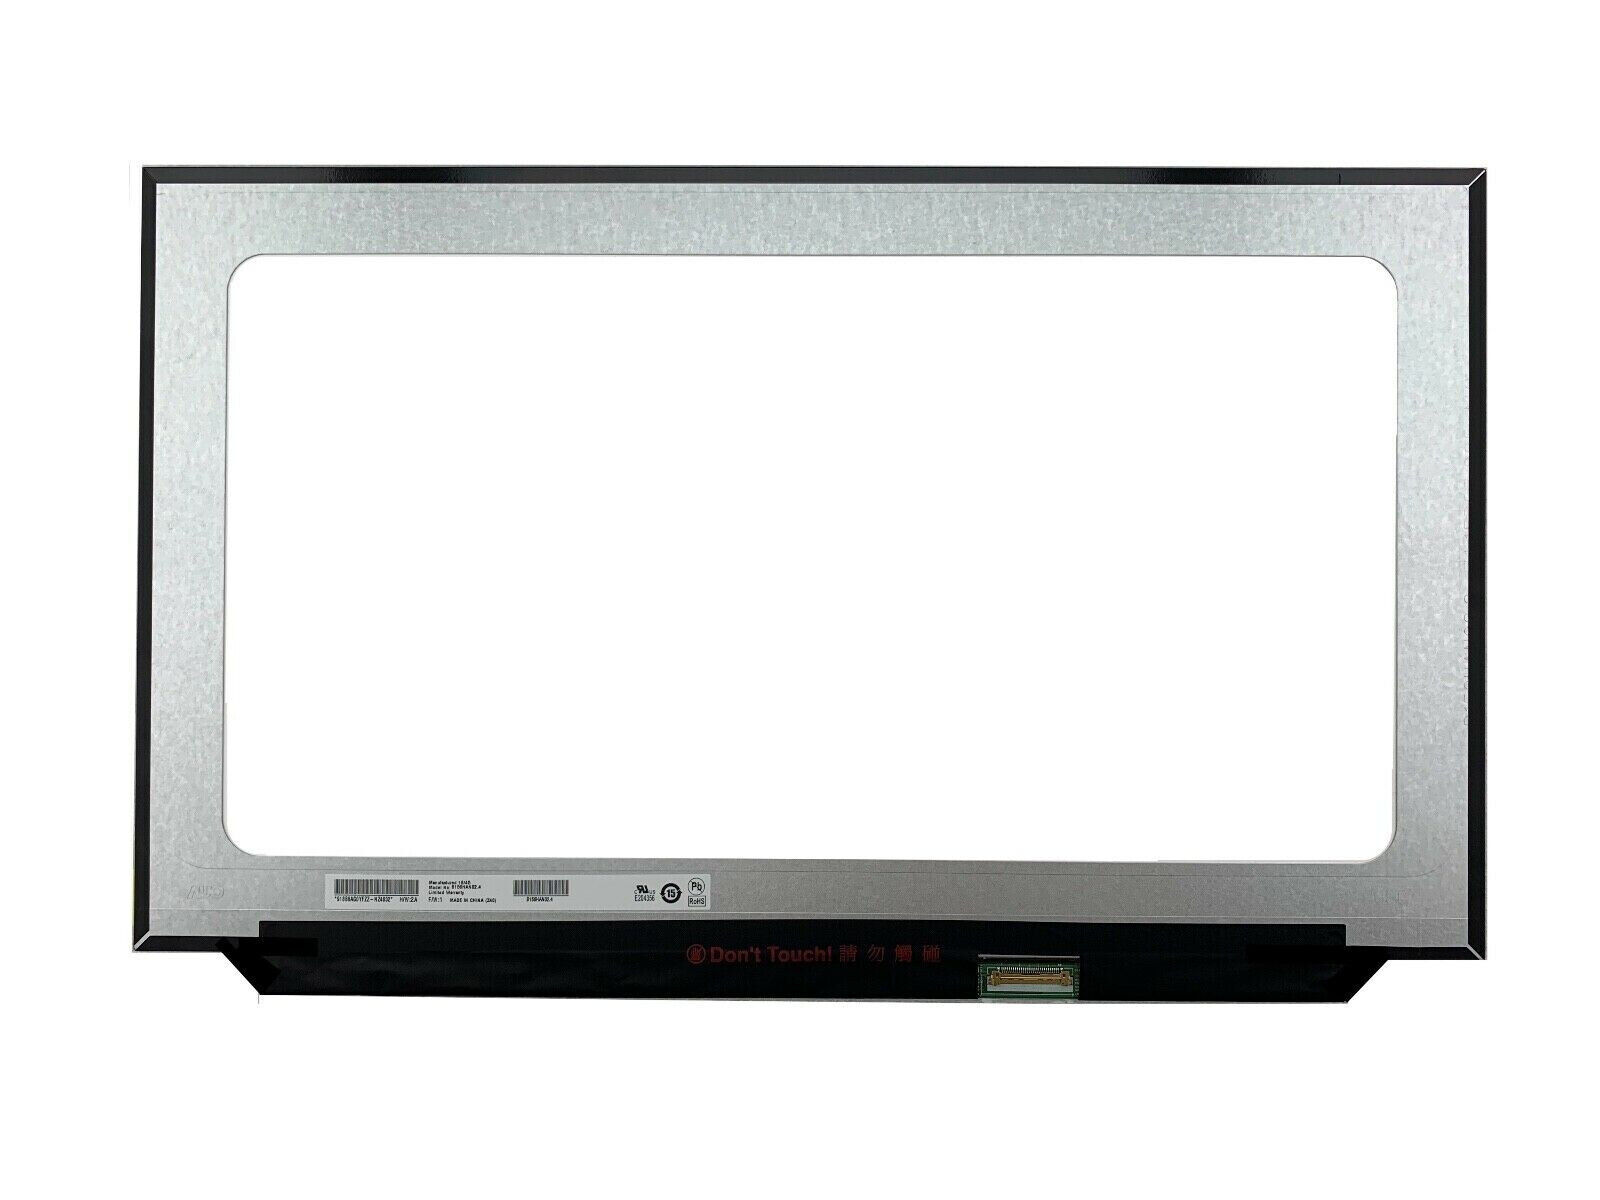 B173HAN04.4 HW 0A 2A 4A 144Hz LED LCD Screen Matte FHD 1920x1080 Display 17.3 in